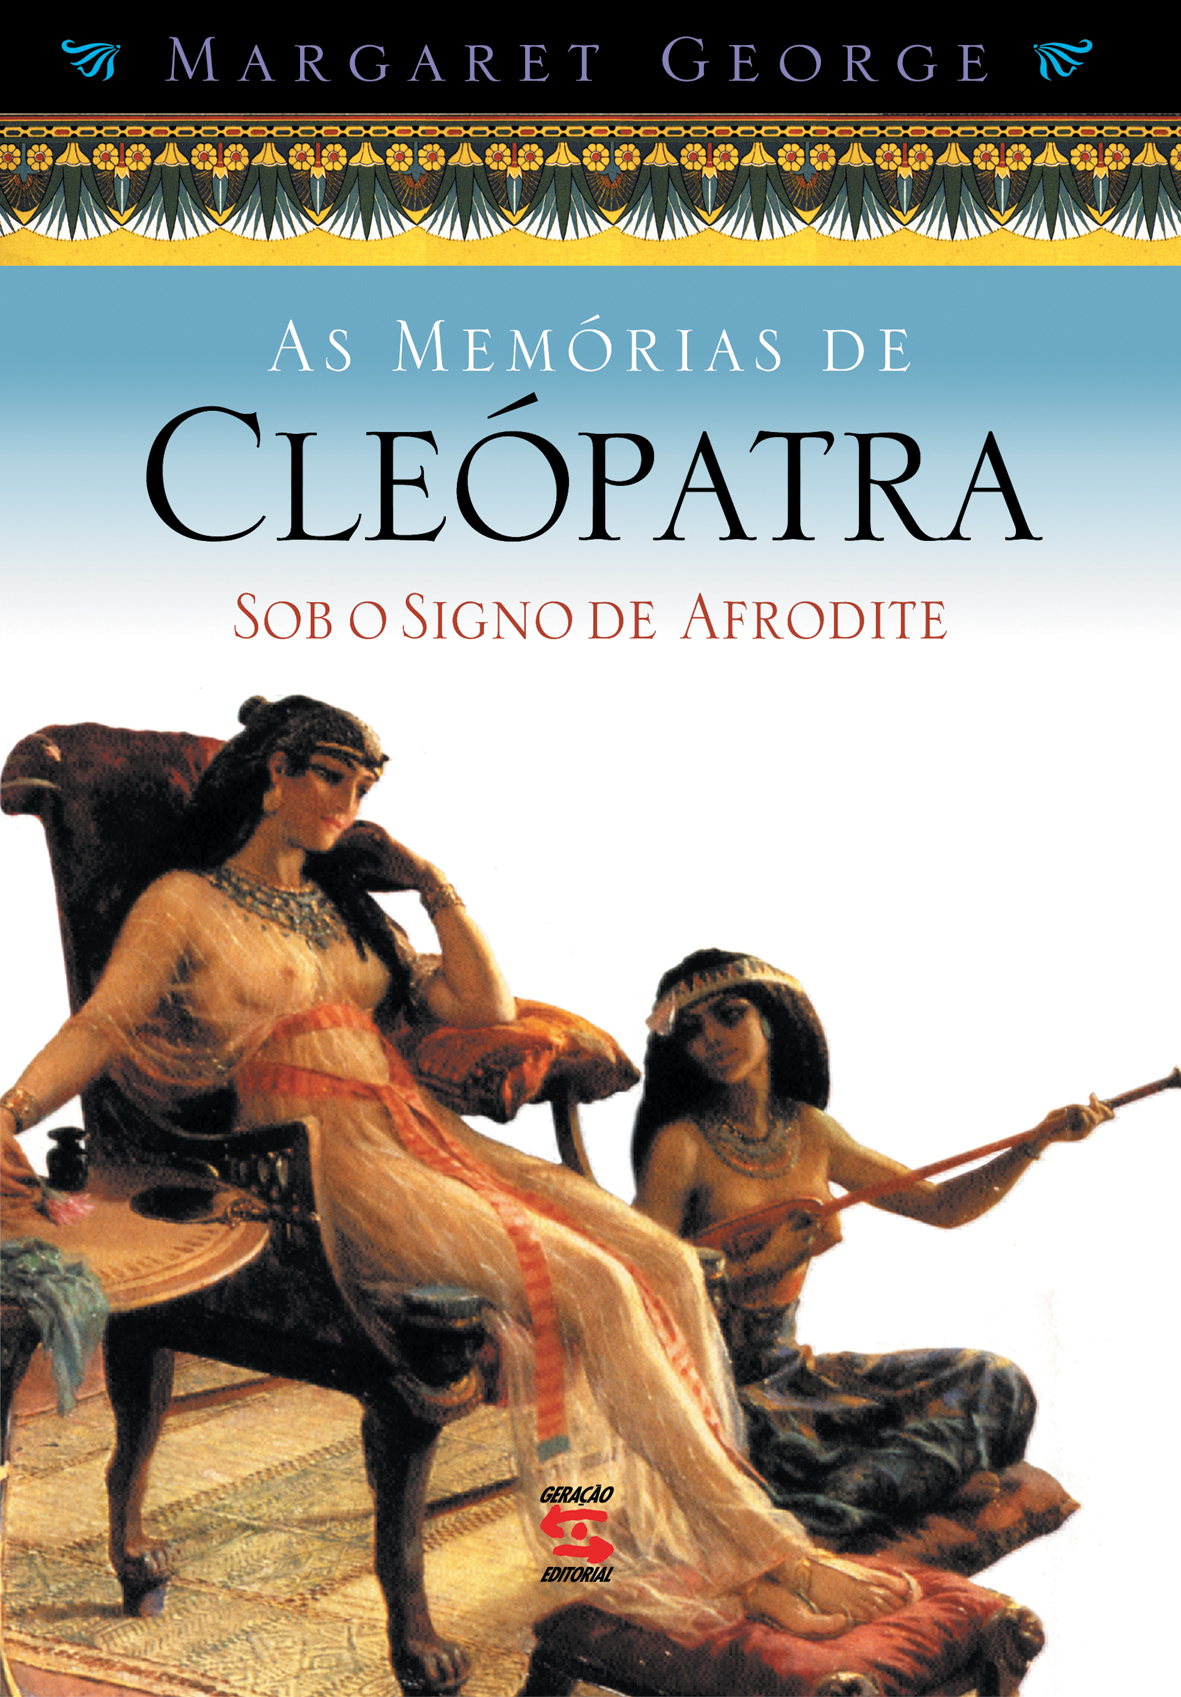 MEMÓRIAS DE CLEÓPATRA,AS - SOB O SIGNO DE AFRODIT, livro de MARGARET GEORGE